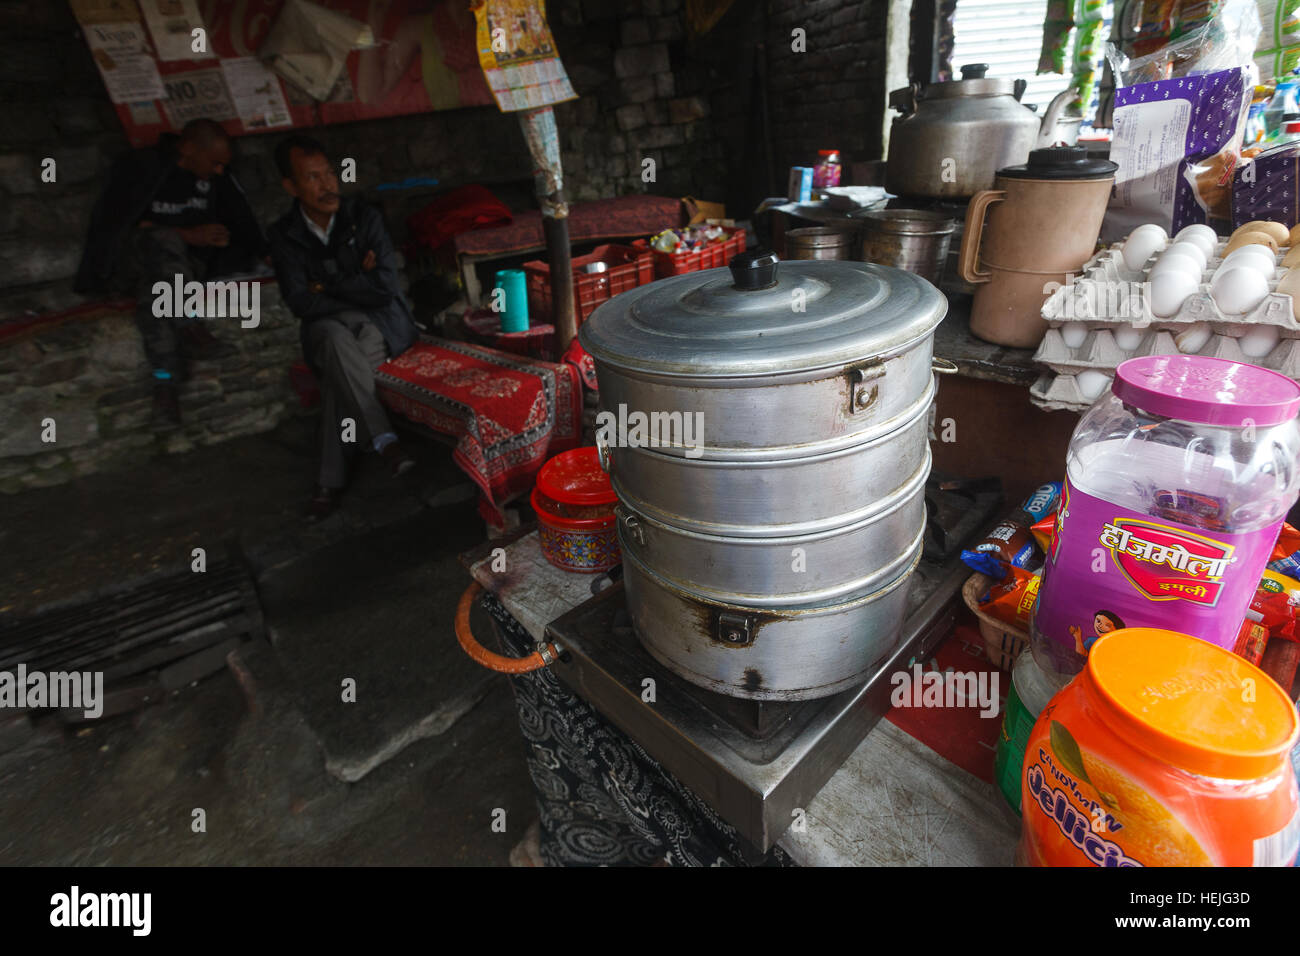 Bateau à vapeur Siddu dans un café de la rue dans le village de Naggar, Himachal Pradesh, Inde Banque D'Images